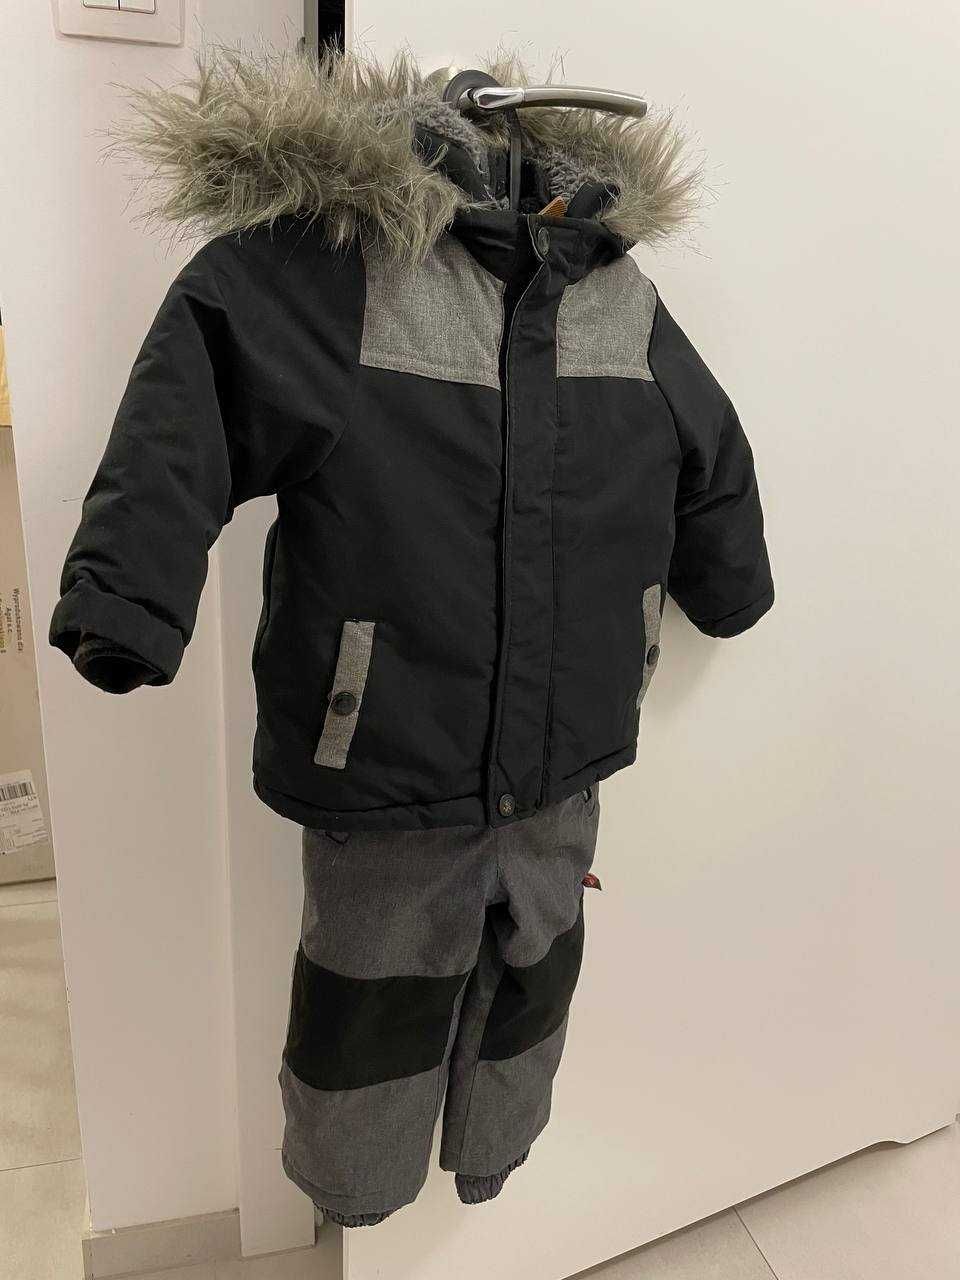 Komplet zimowy kurtka i spodnie dla chłopca r 86